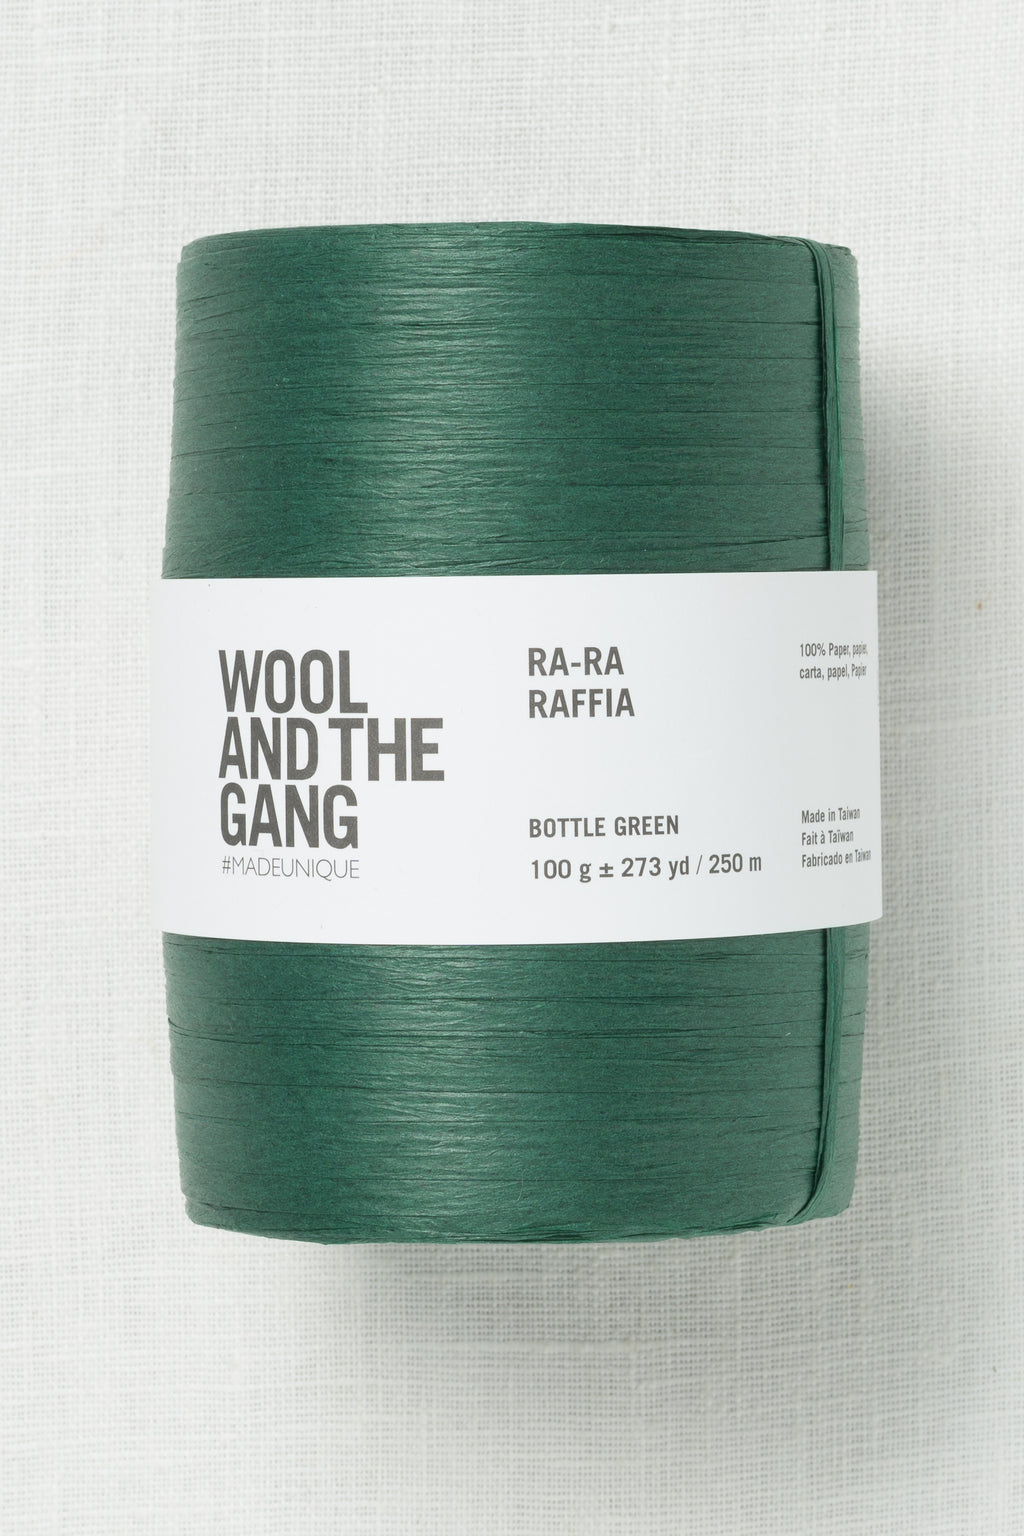 Wool and the Gang Ra-Ra Raffia Bottle Green